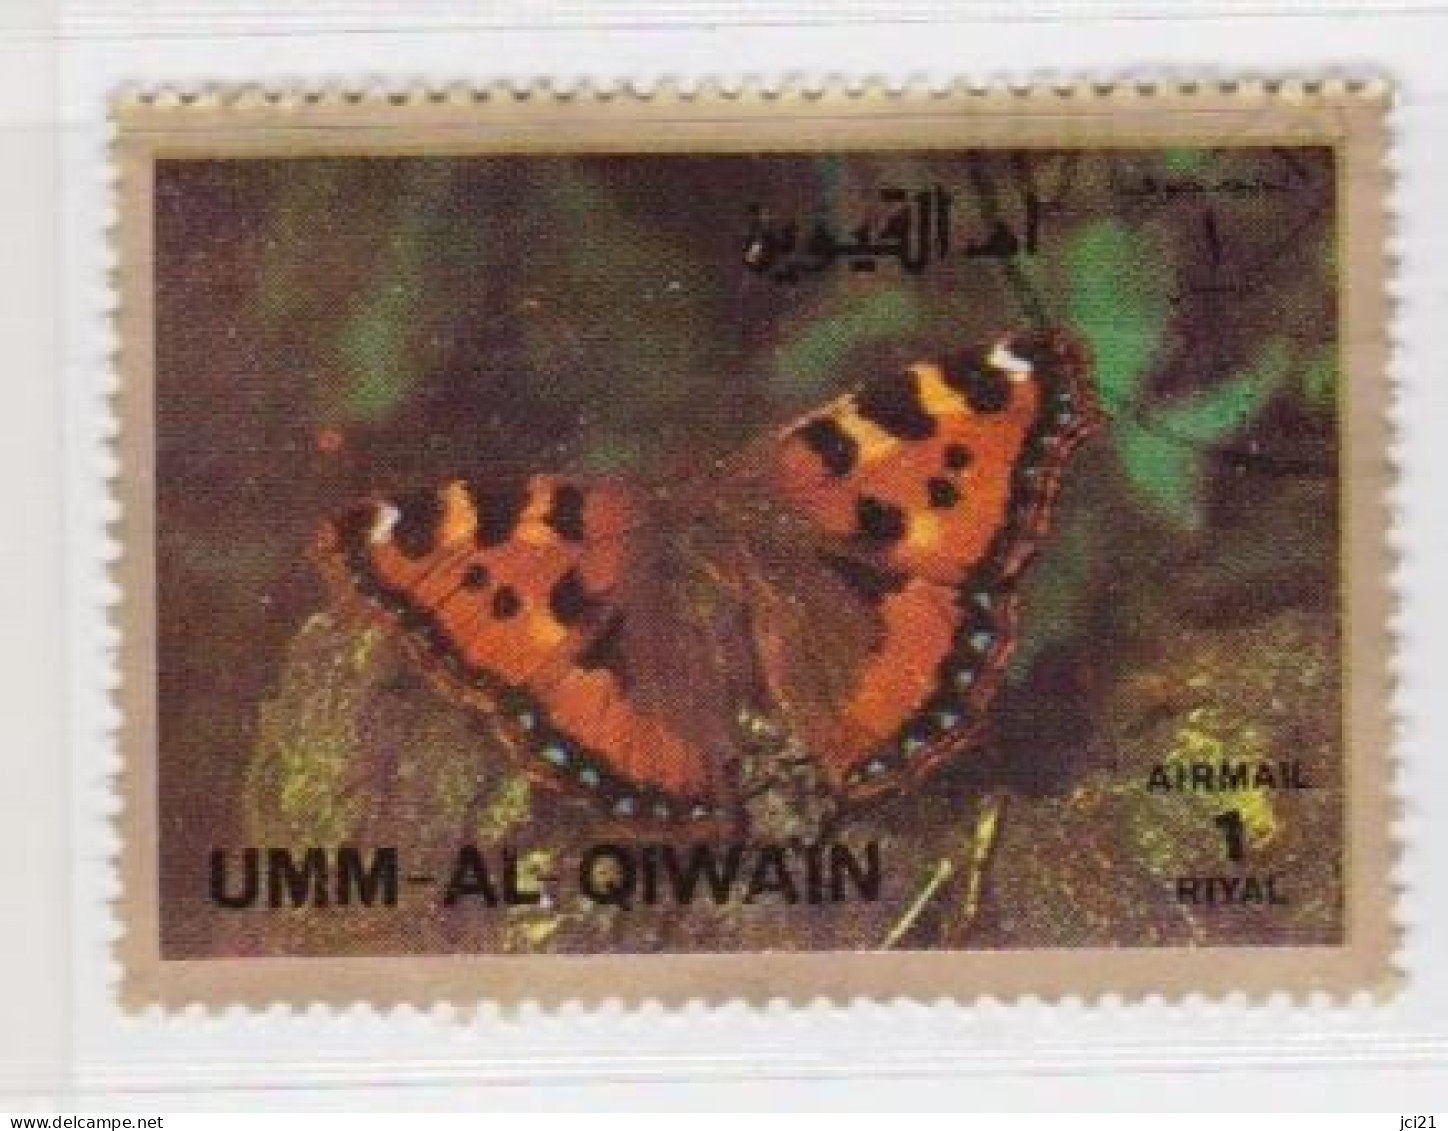 UMM AL QIWAIN - PAPILLONS (1431)_Ti405 - Umm Al-Qaiwain